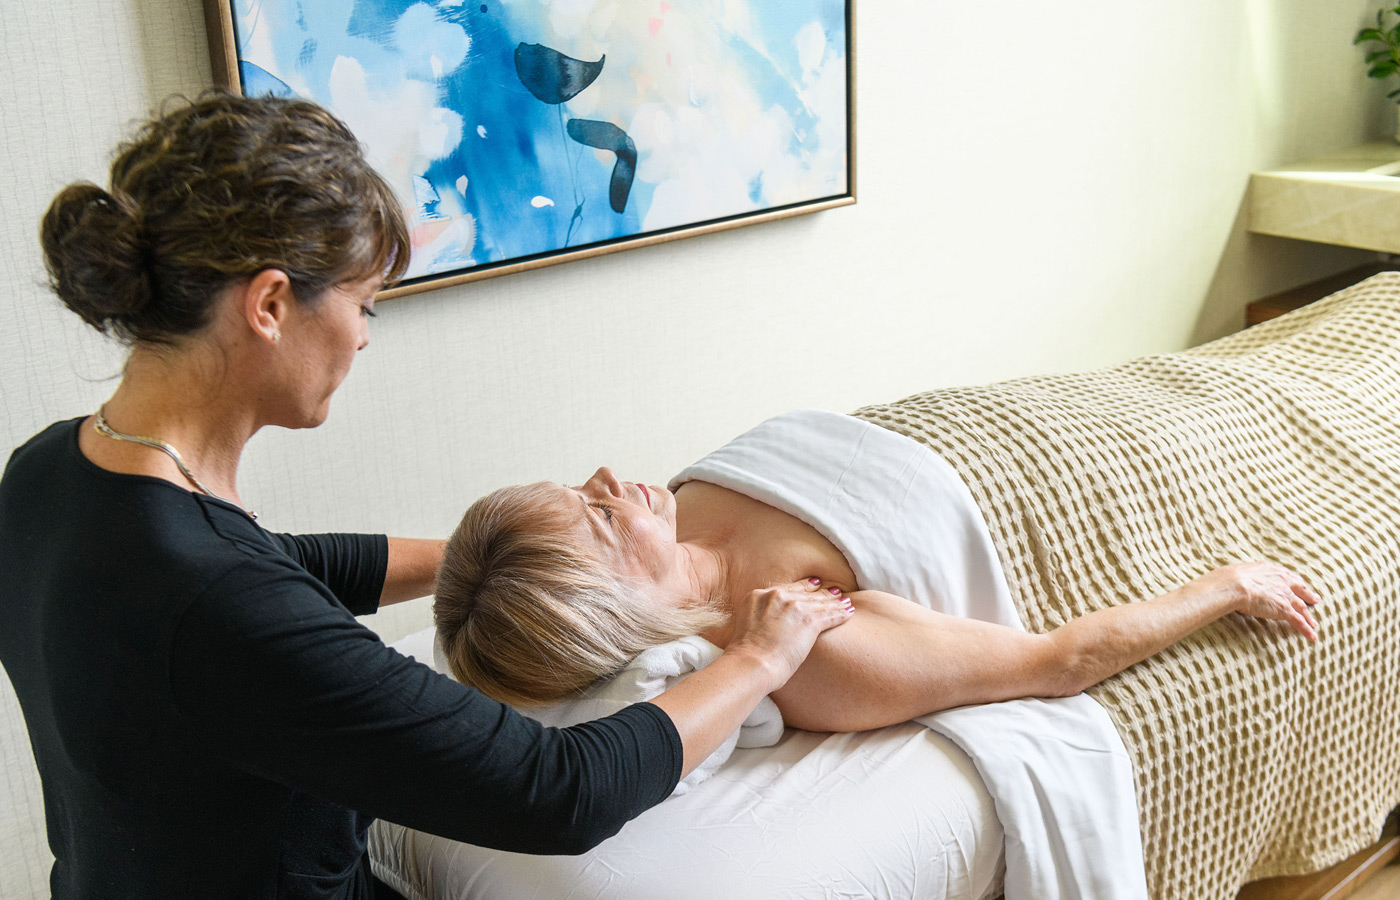 Woman gets massage by masseuse.